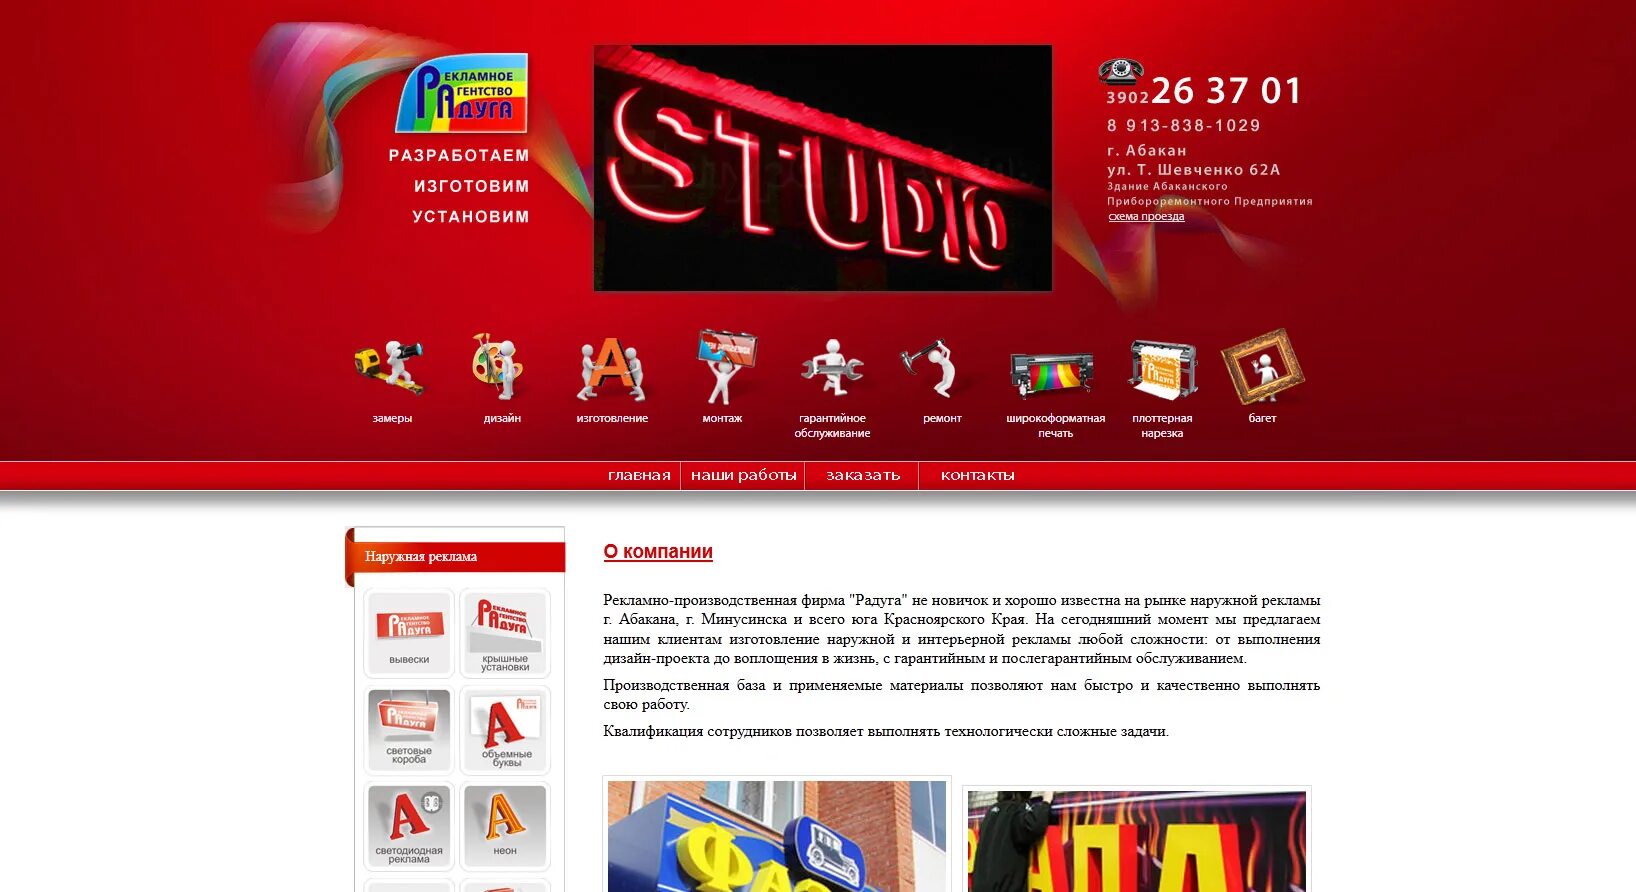 Рекламные сайты москвы. Сайты рекламных агентств. Дизайн сайта рекламного агентства. Рекламный. Баннер рекламного агентства.